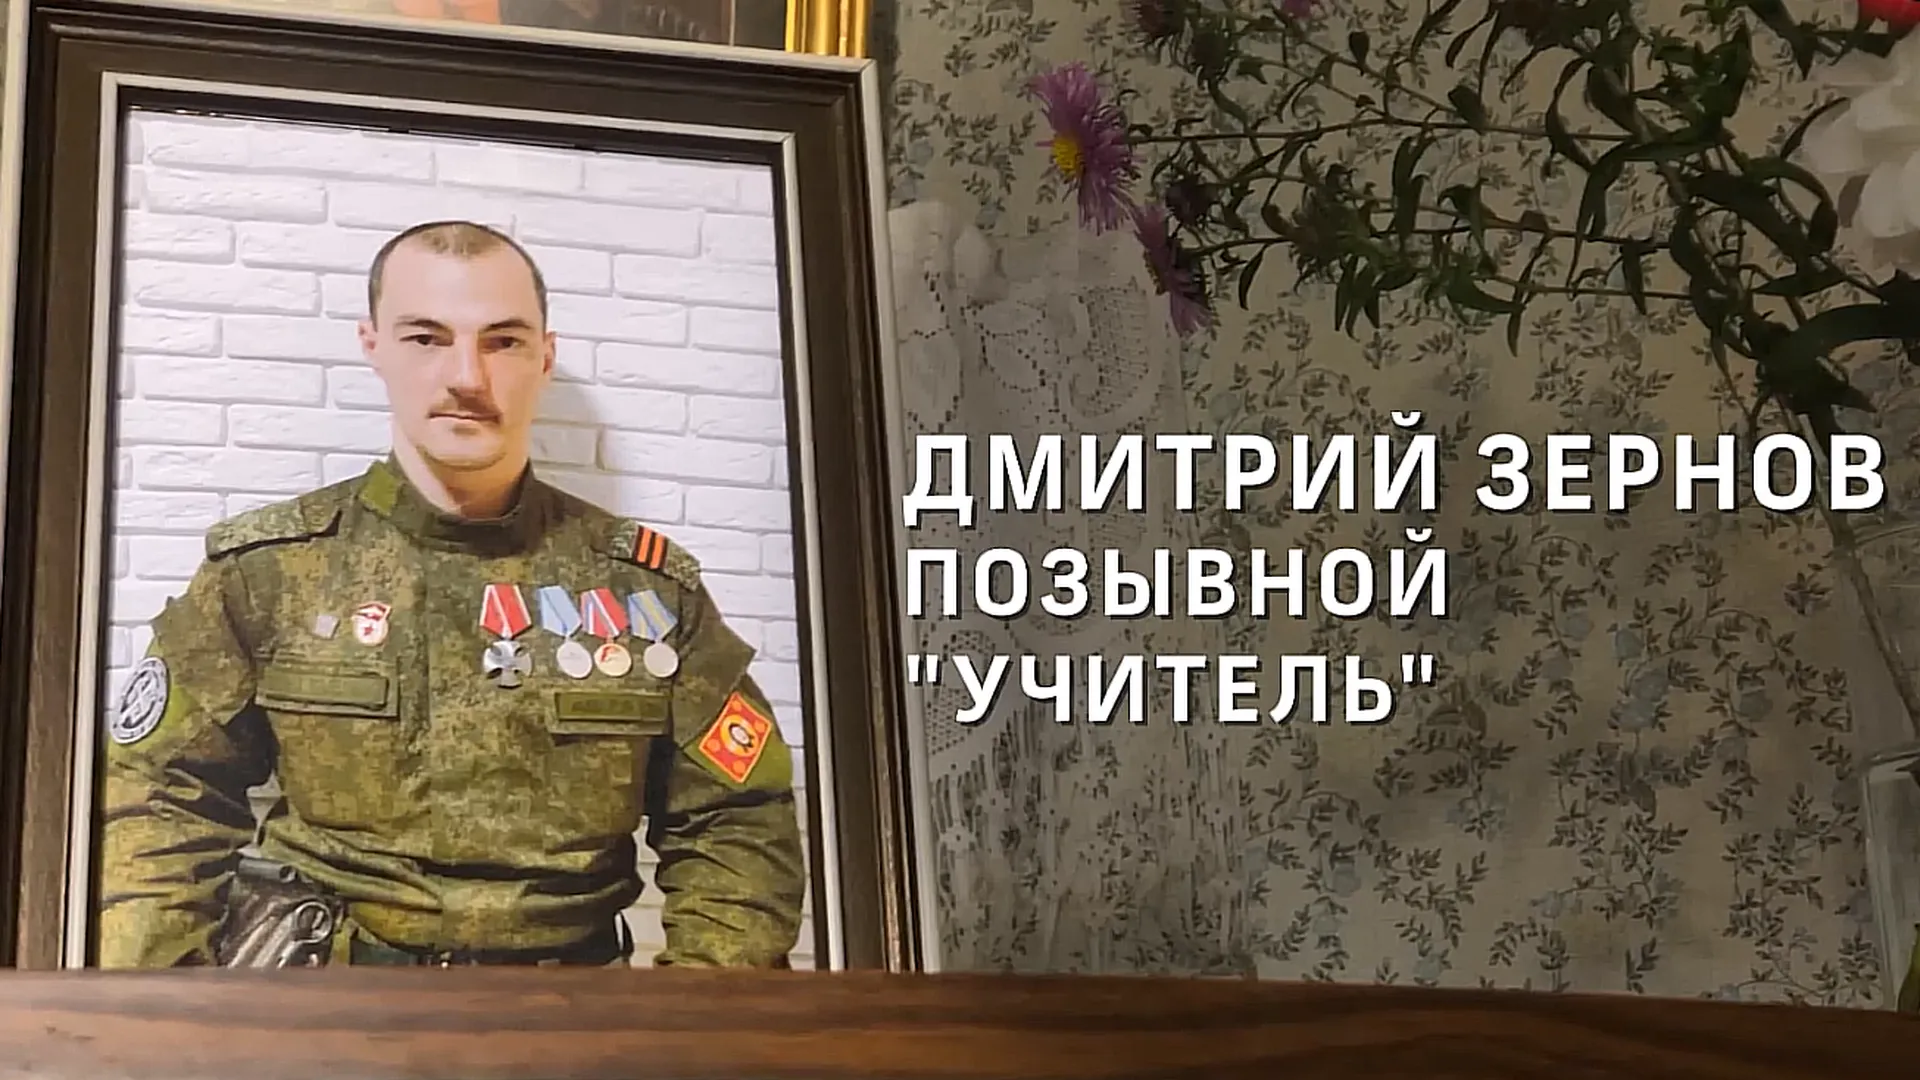 «Сын, отец, учитель и воин». Педагог из Подольска героически погиб под Луганском